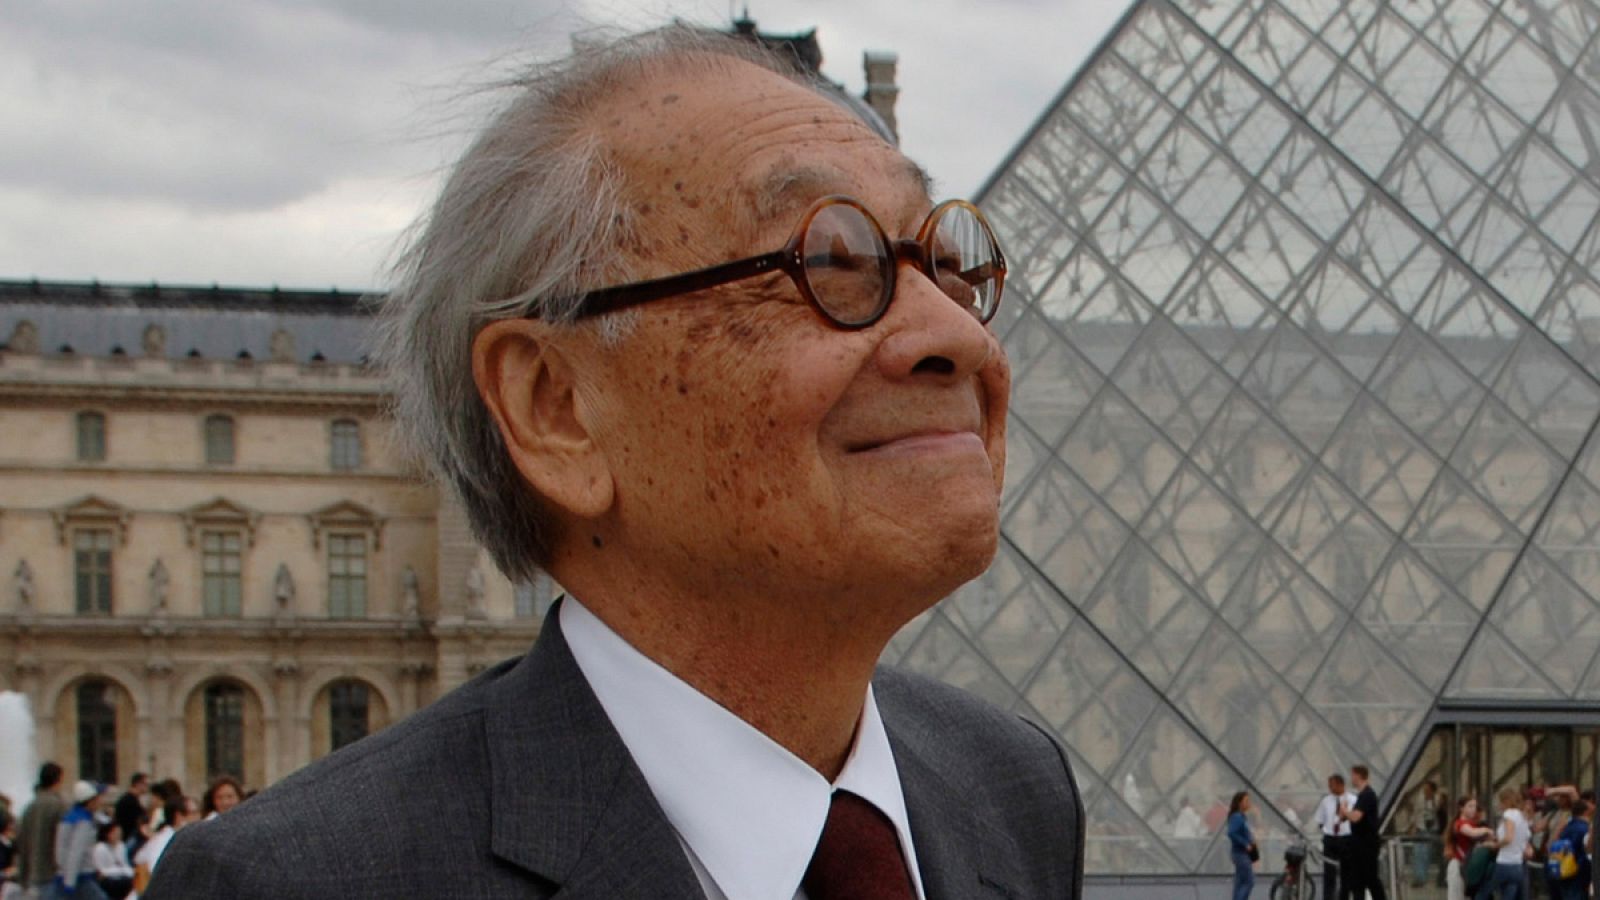 Obituarios: Muere a los 102 años el arquitecto I.M. Pei, creador de la pirámide de Louvre - RTVE.es